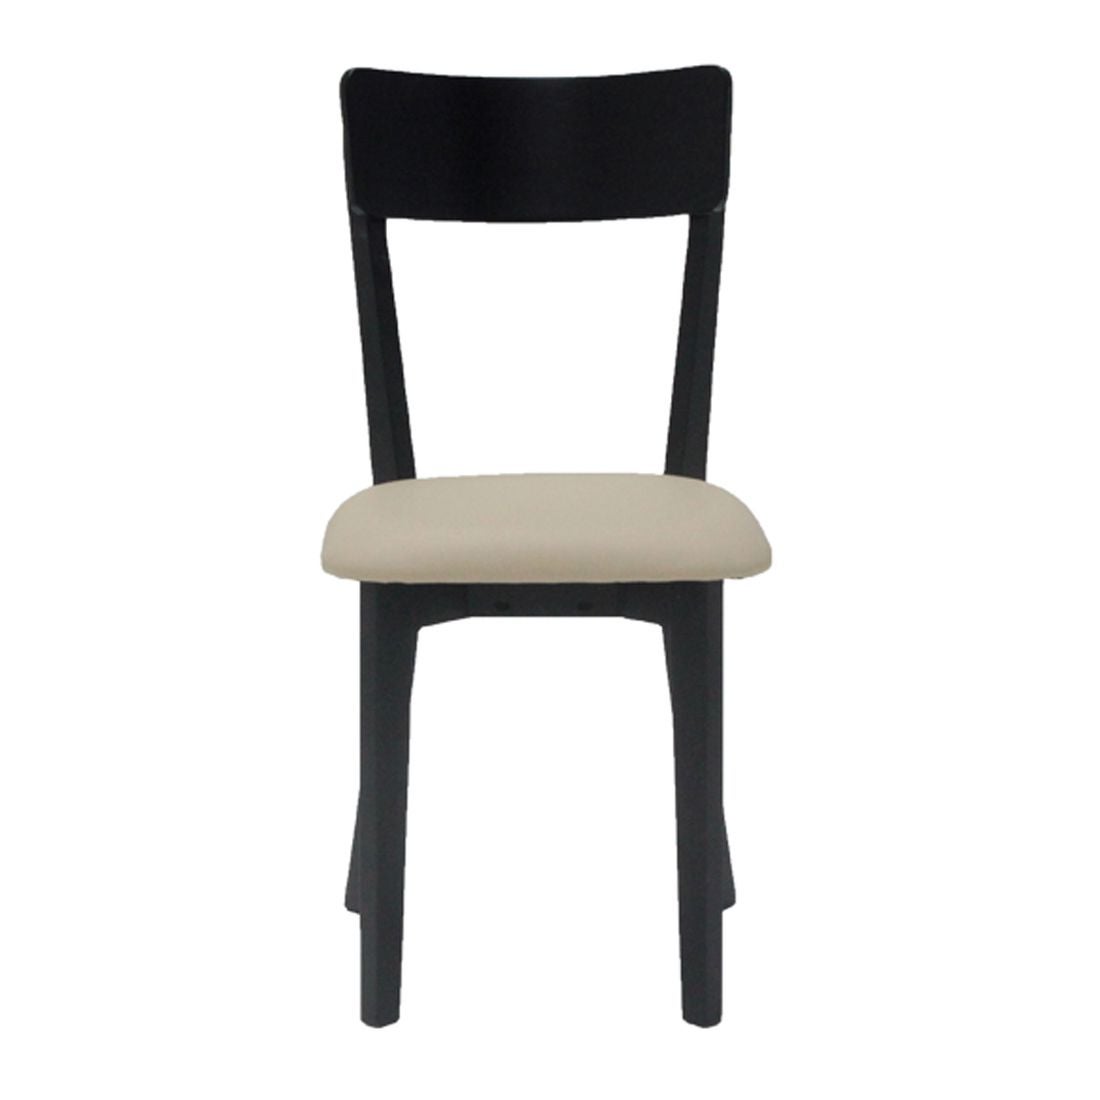 เก้าอี้ทานอาหาร เก้าอี้ไม้เบาะหนัง รุ่น Twitter-SB Design Square